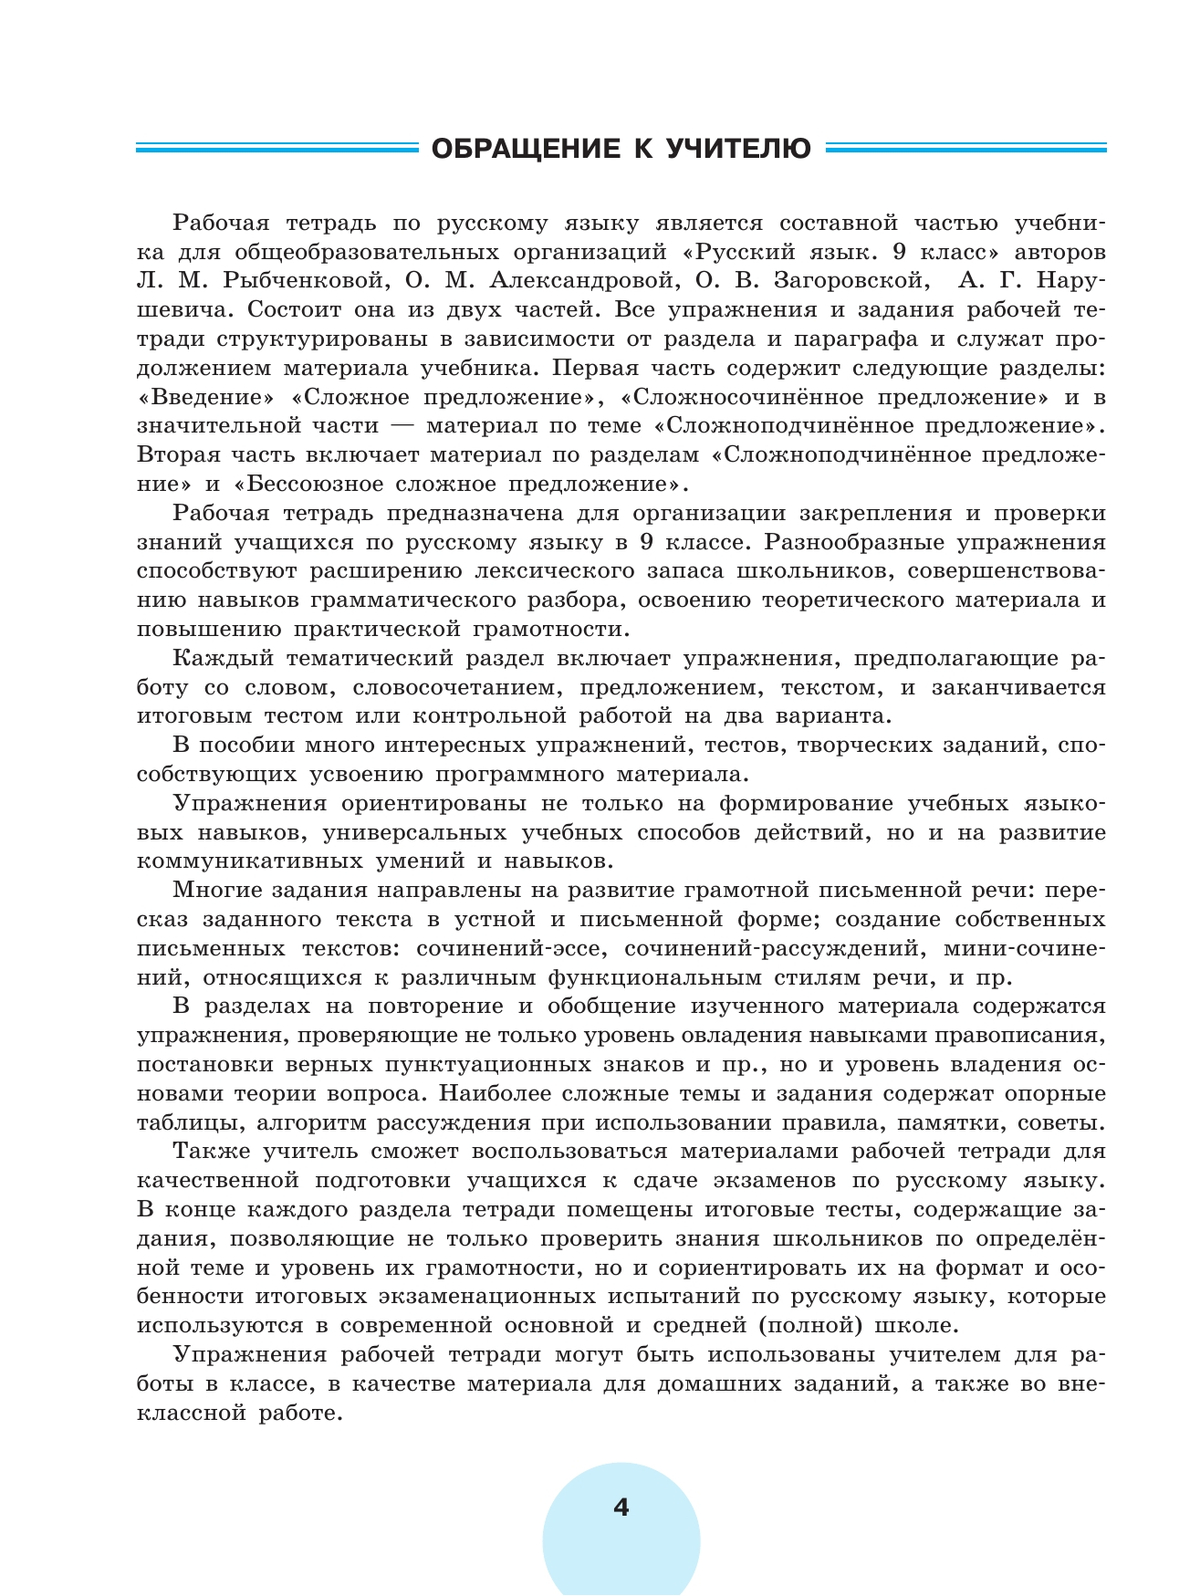 Русский язык. Рабочая тетрадь. 9 класс. В 2 ч. Часть 2 3